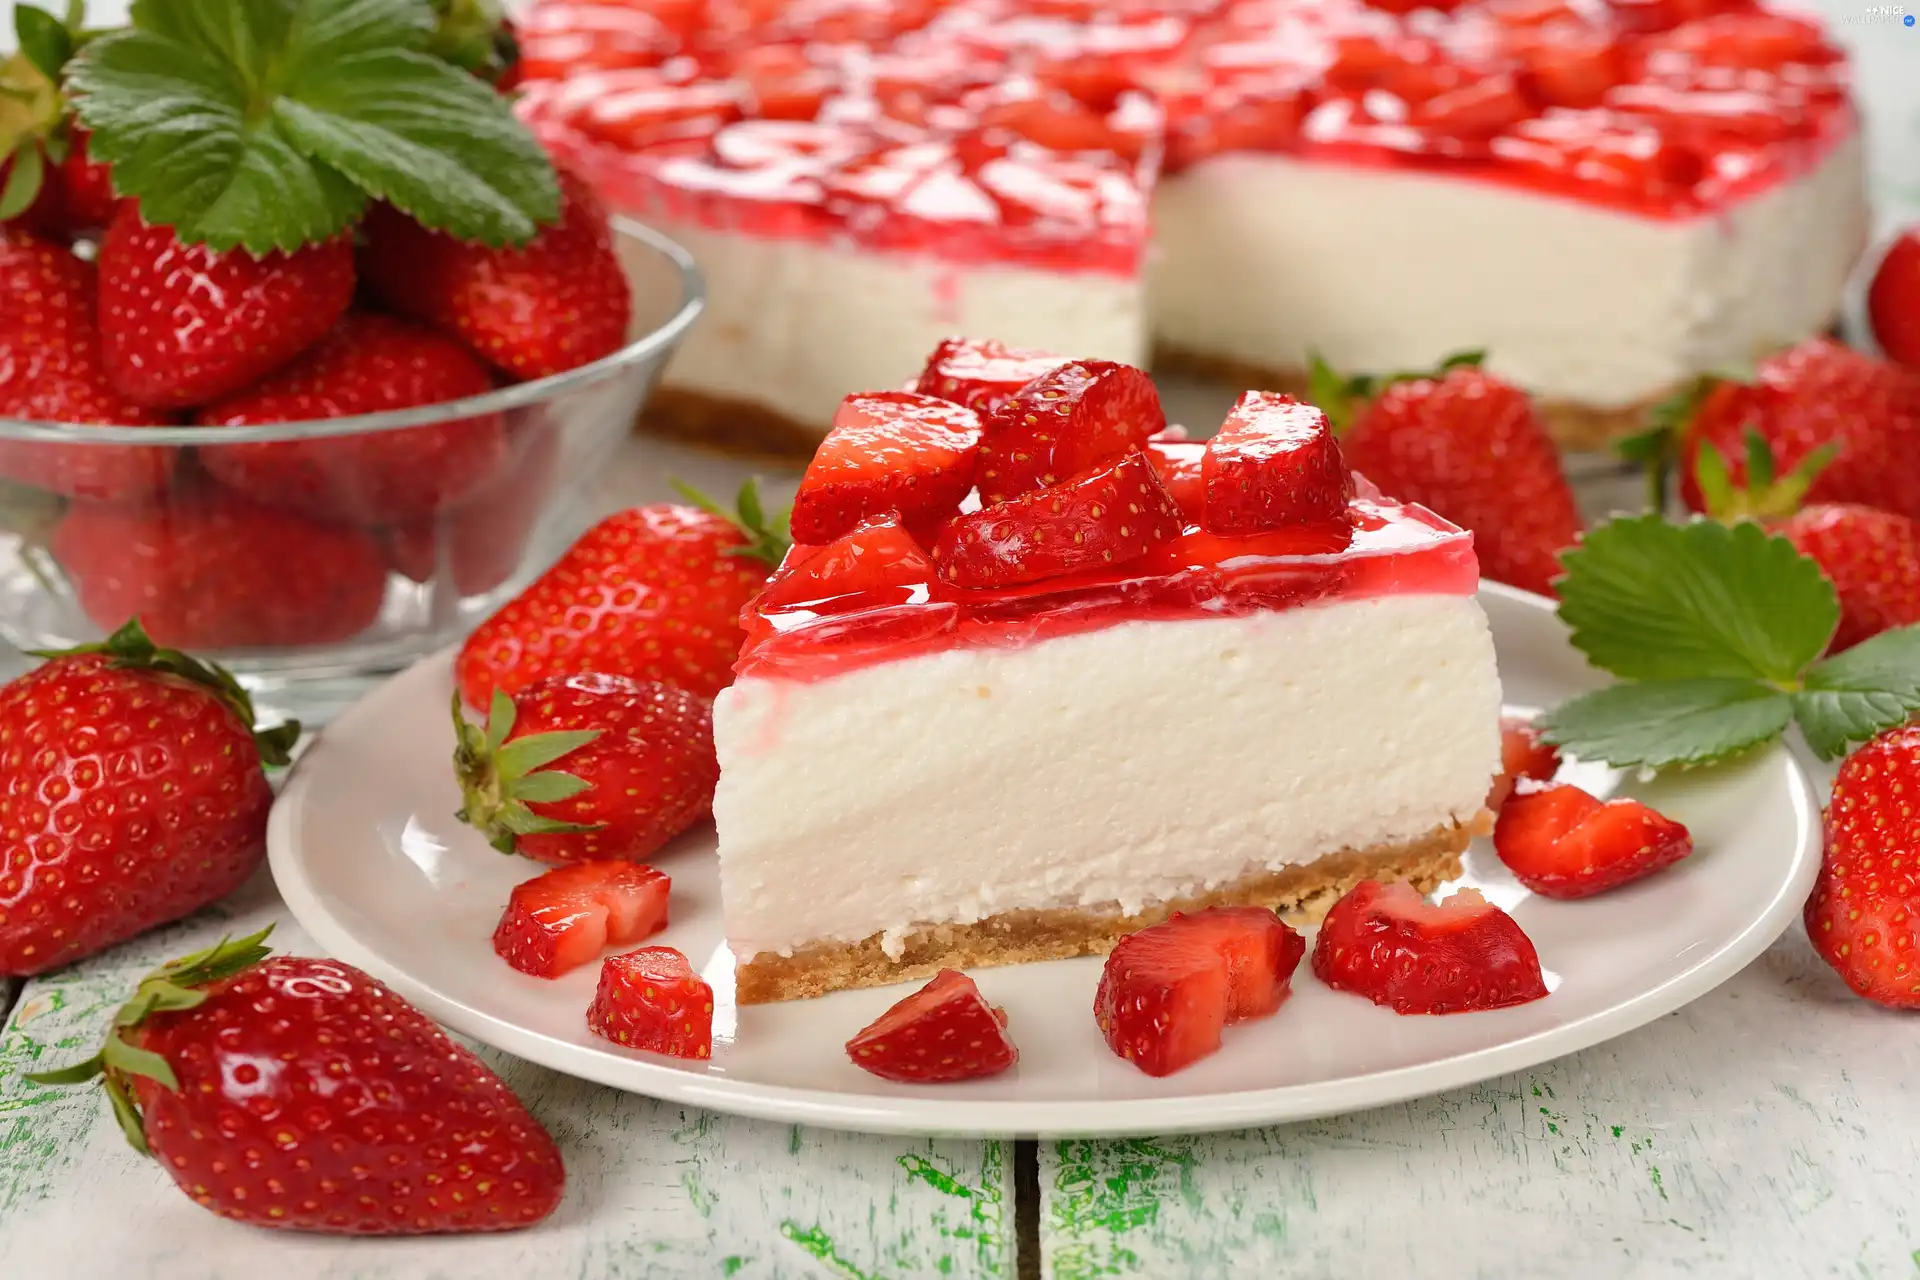 jelly, cheesecake, strawberries